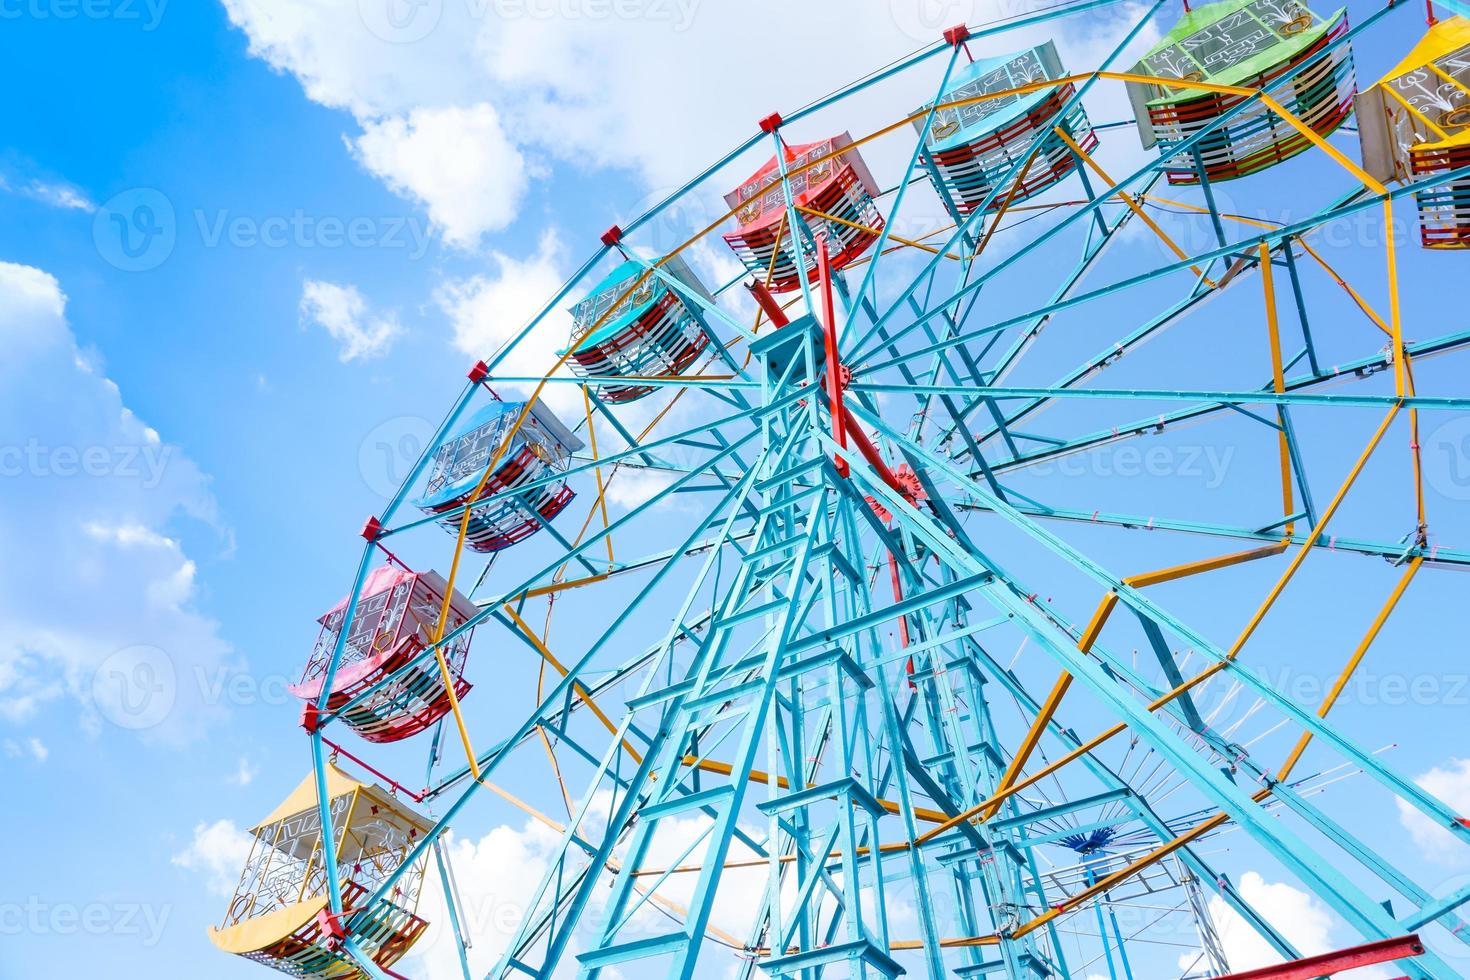 Riesenrad auf dem Hintergrund des blauen Himmels, buntes altes Riesenrad foto